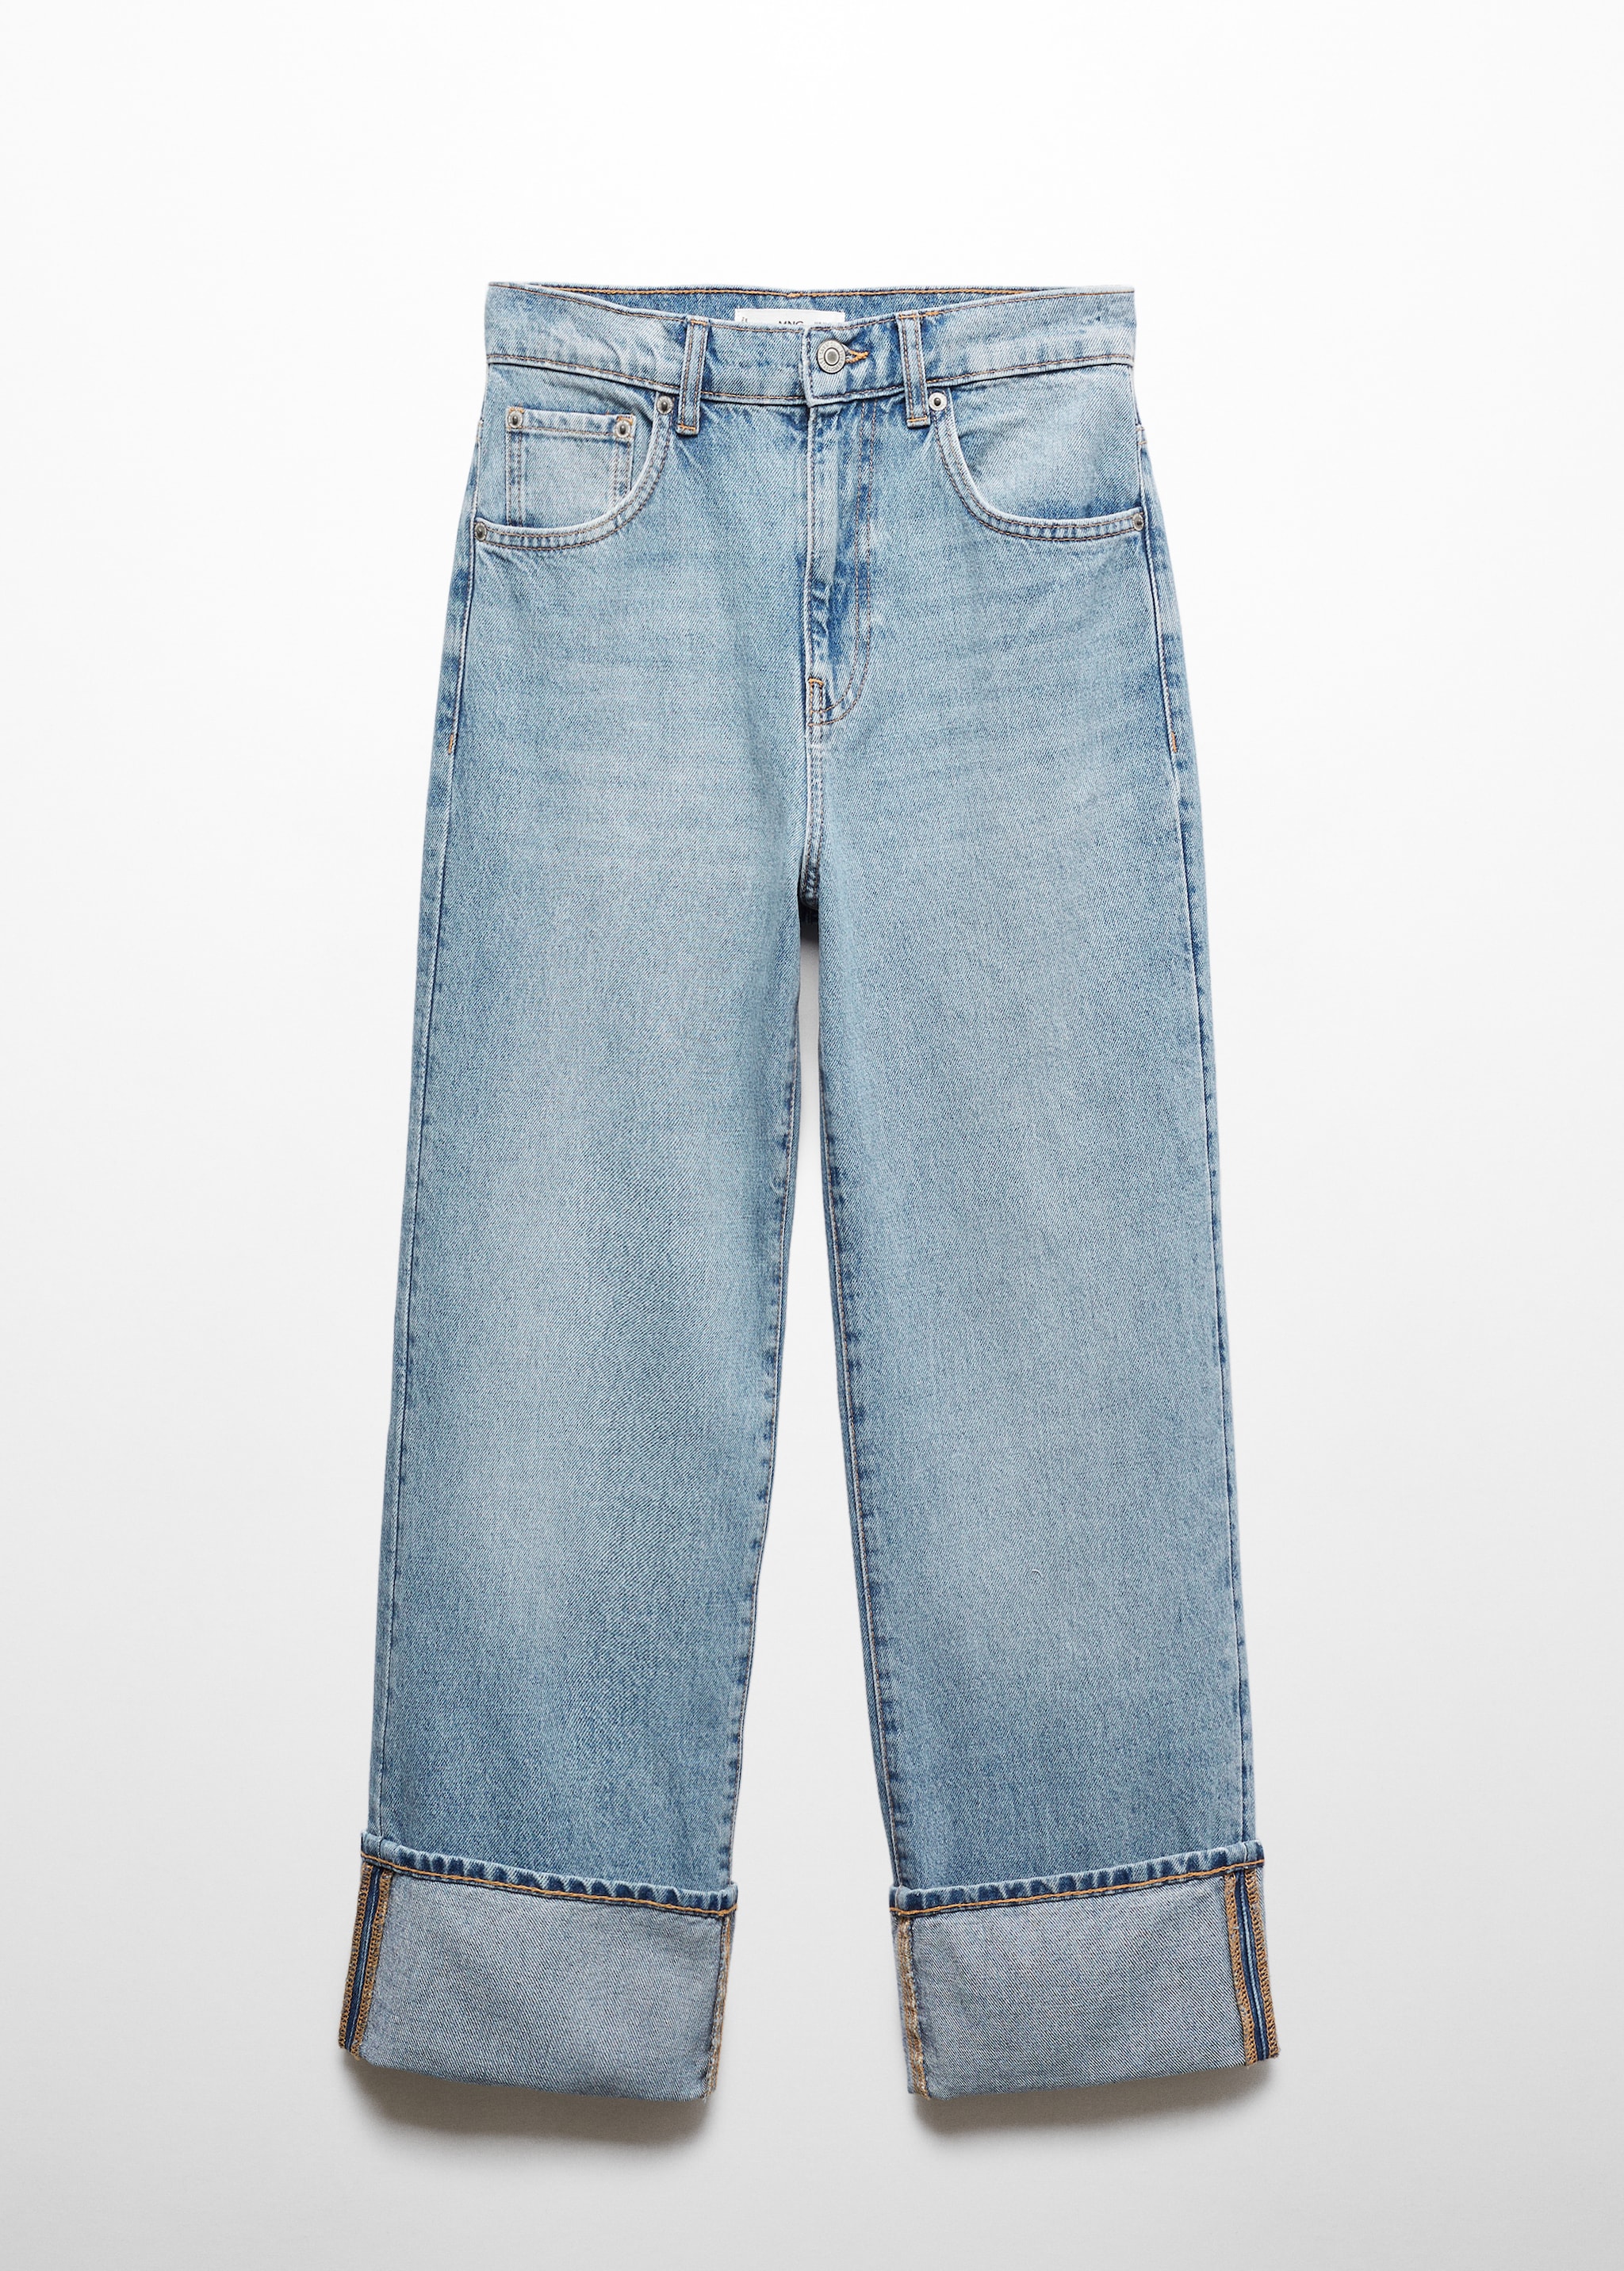 Прямые джинсы с отворотами - Изделие без модели